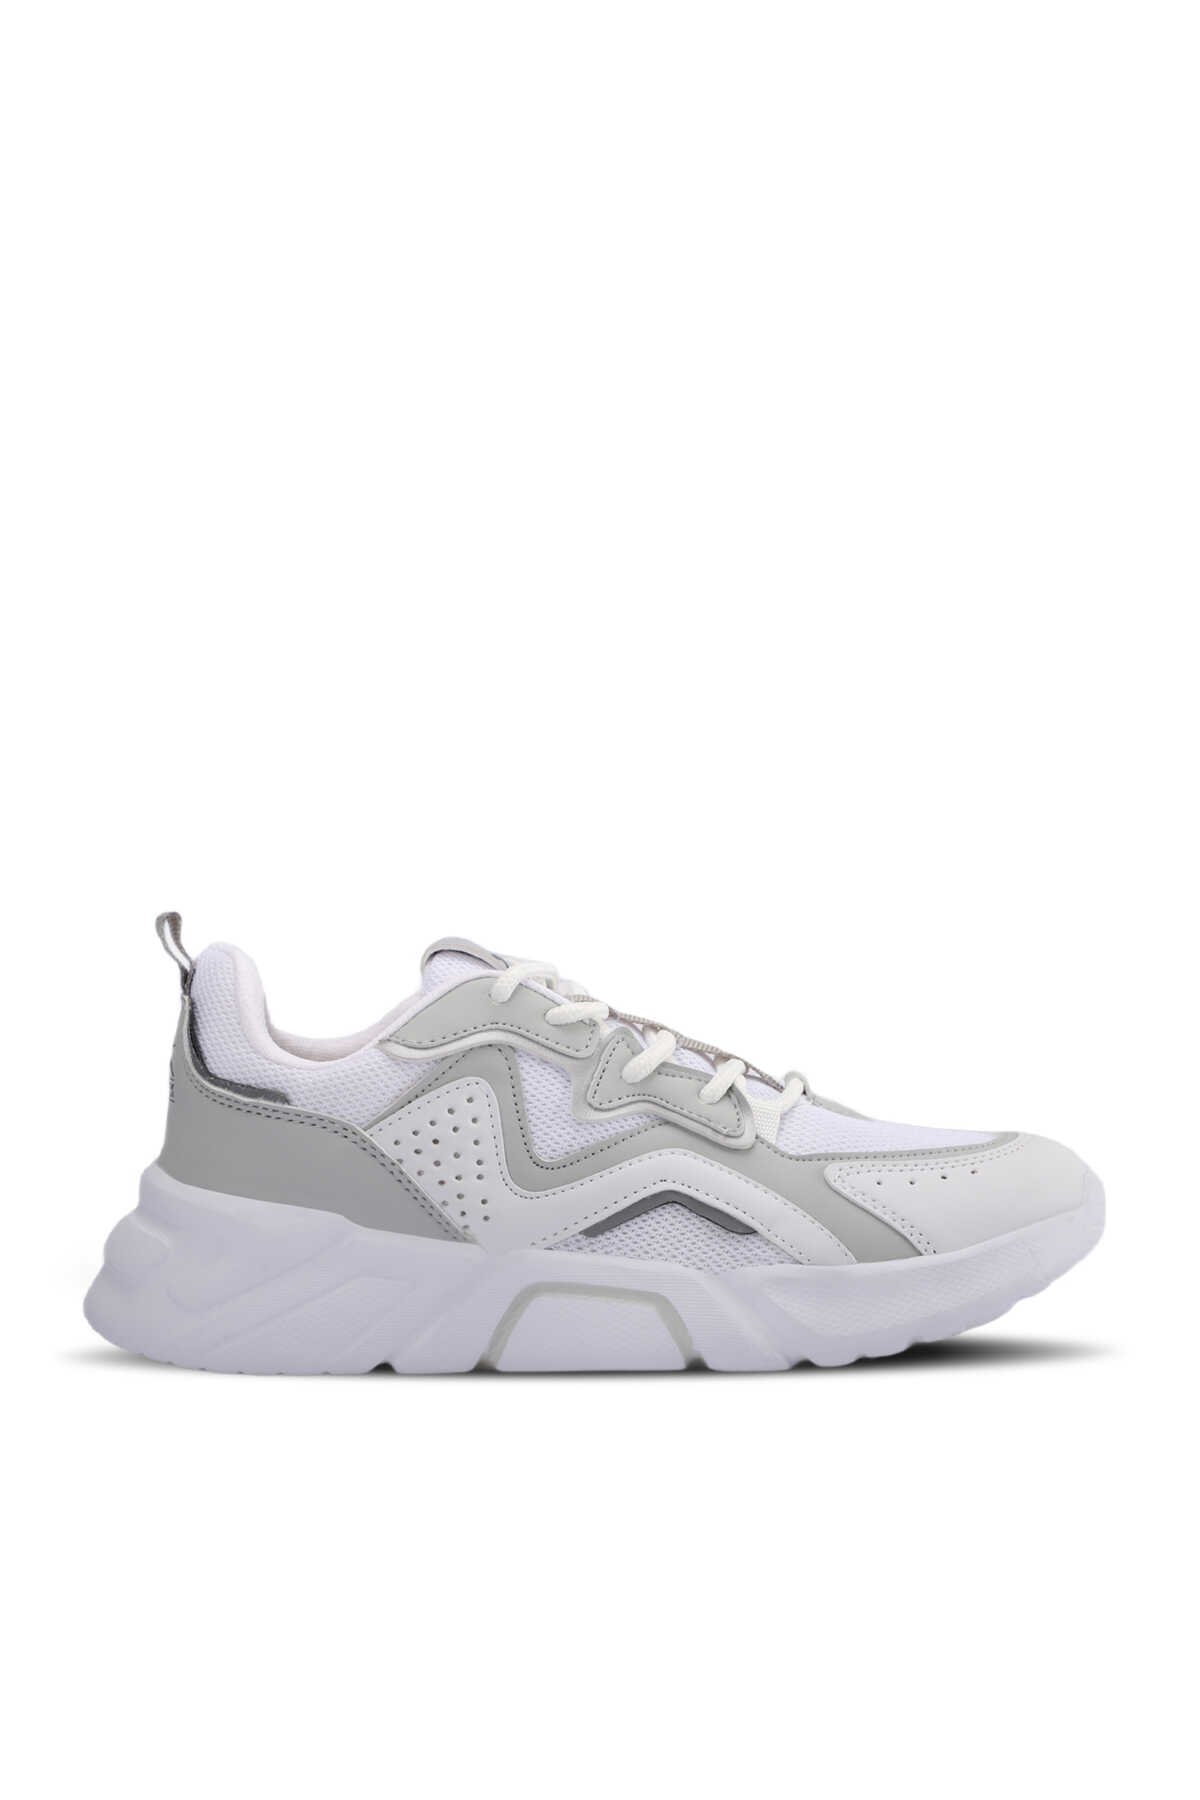 Slazenger - FELIX Sneaker Kadın Ayakkabı Beyaz / Gümüş